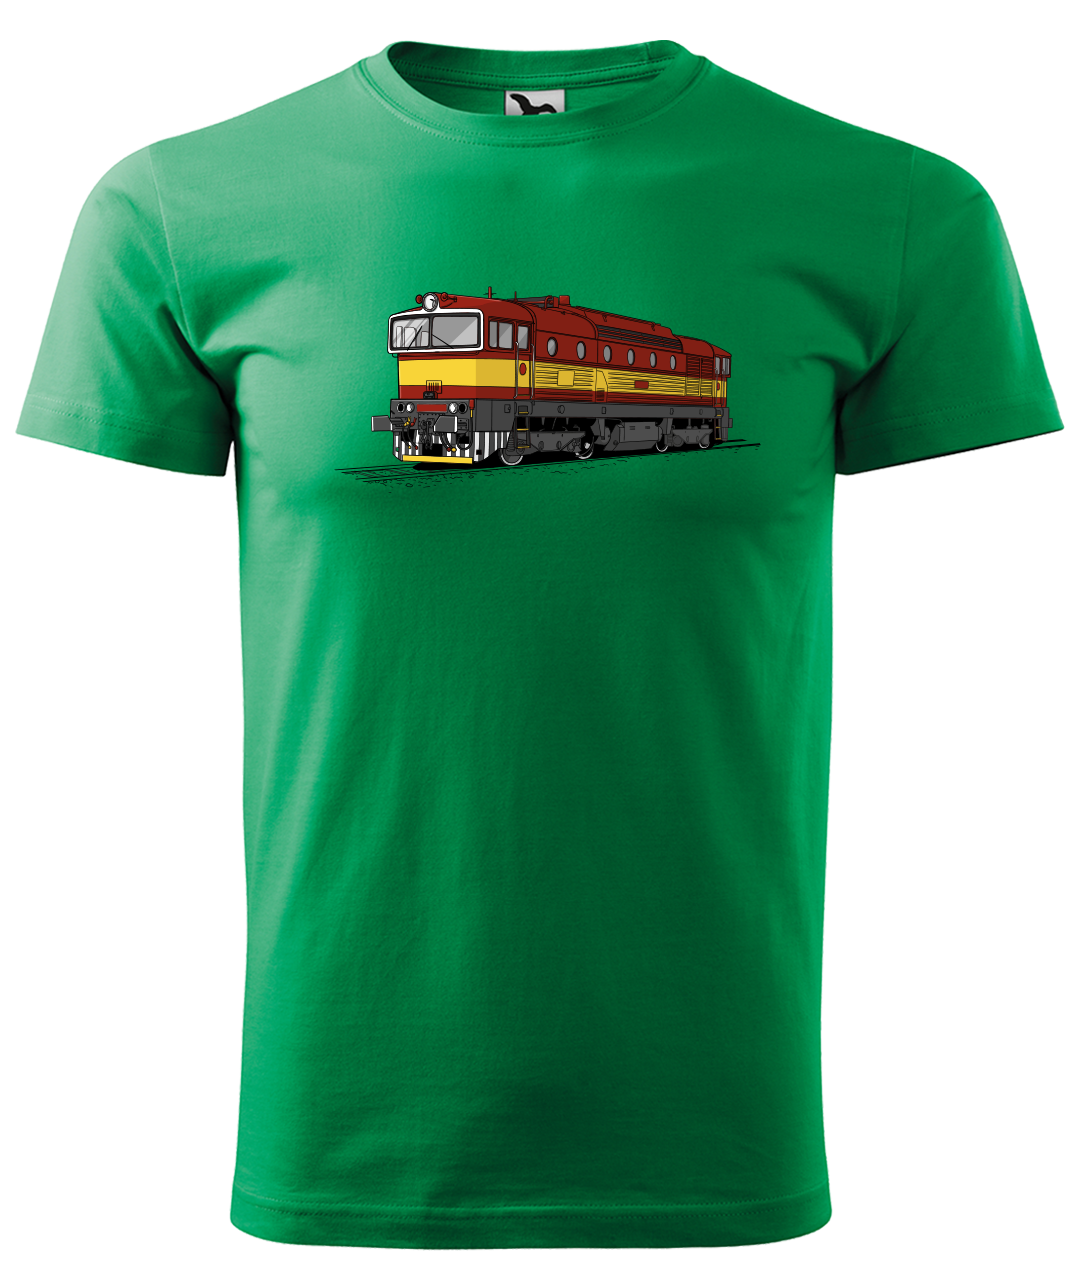 Dětské tričko s vlakem - Barevná lokomotiva BREJLOVEC Velikost: 4 roky / 110 cm, Barva: Středně zelená (16)